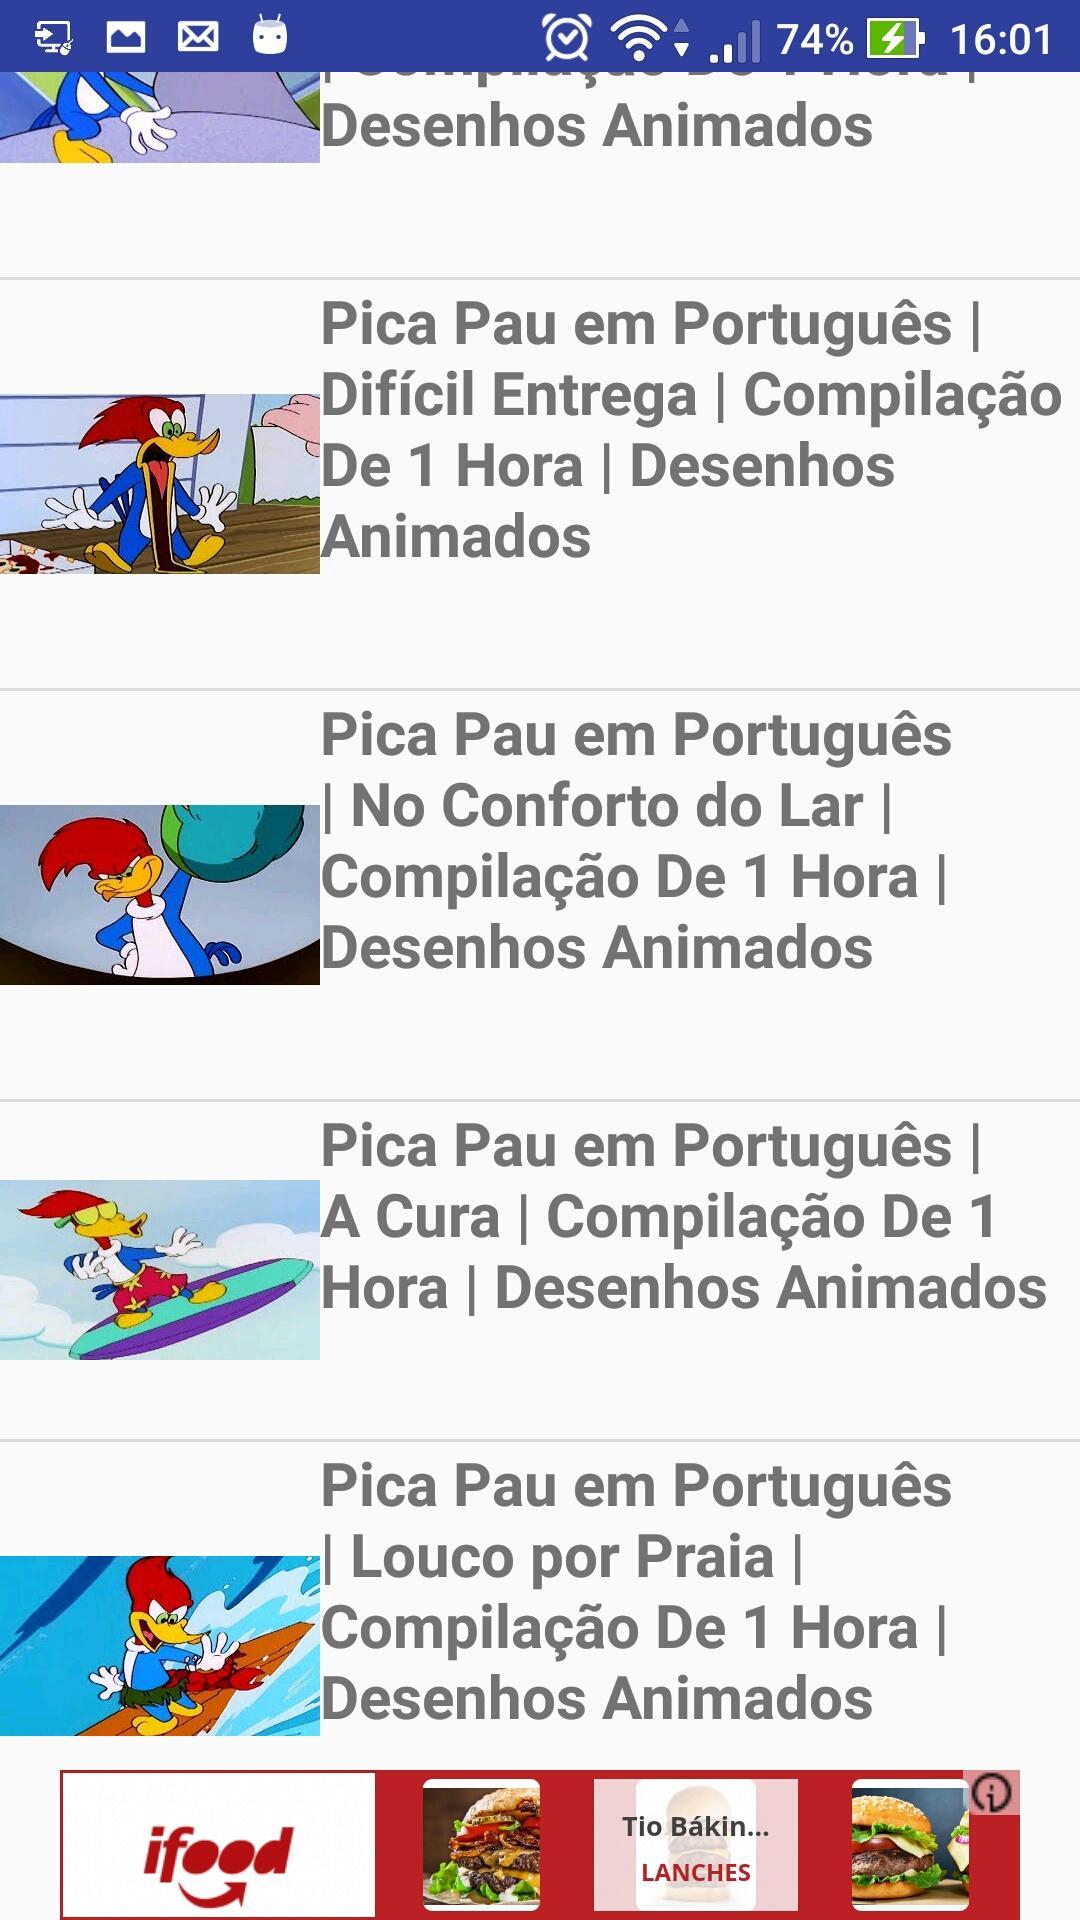 Pica-Pau em Português, Compilação De 1 Hora